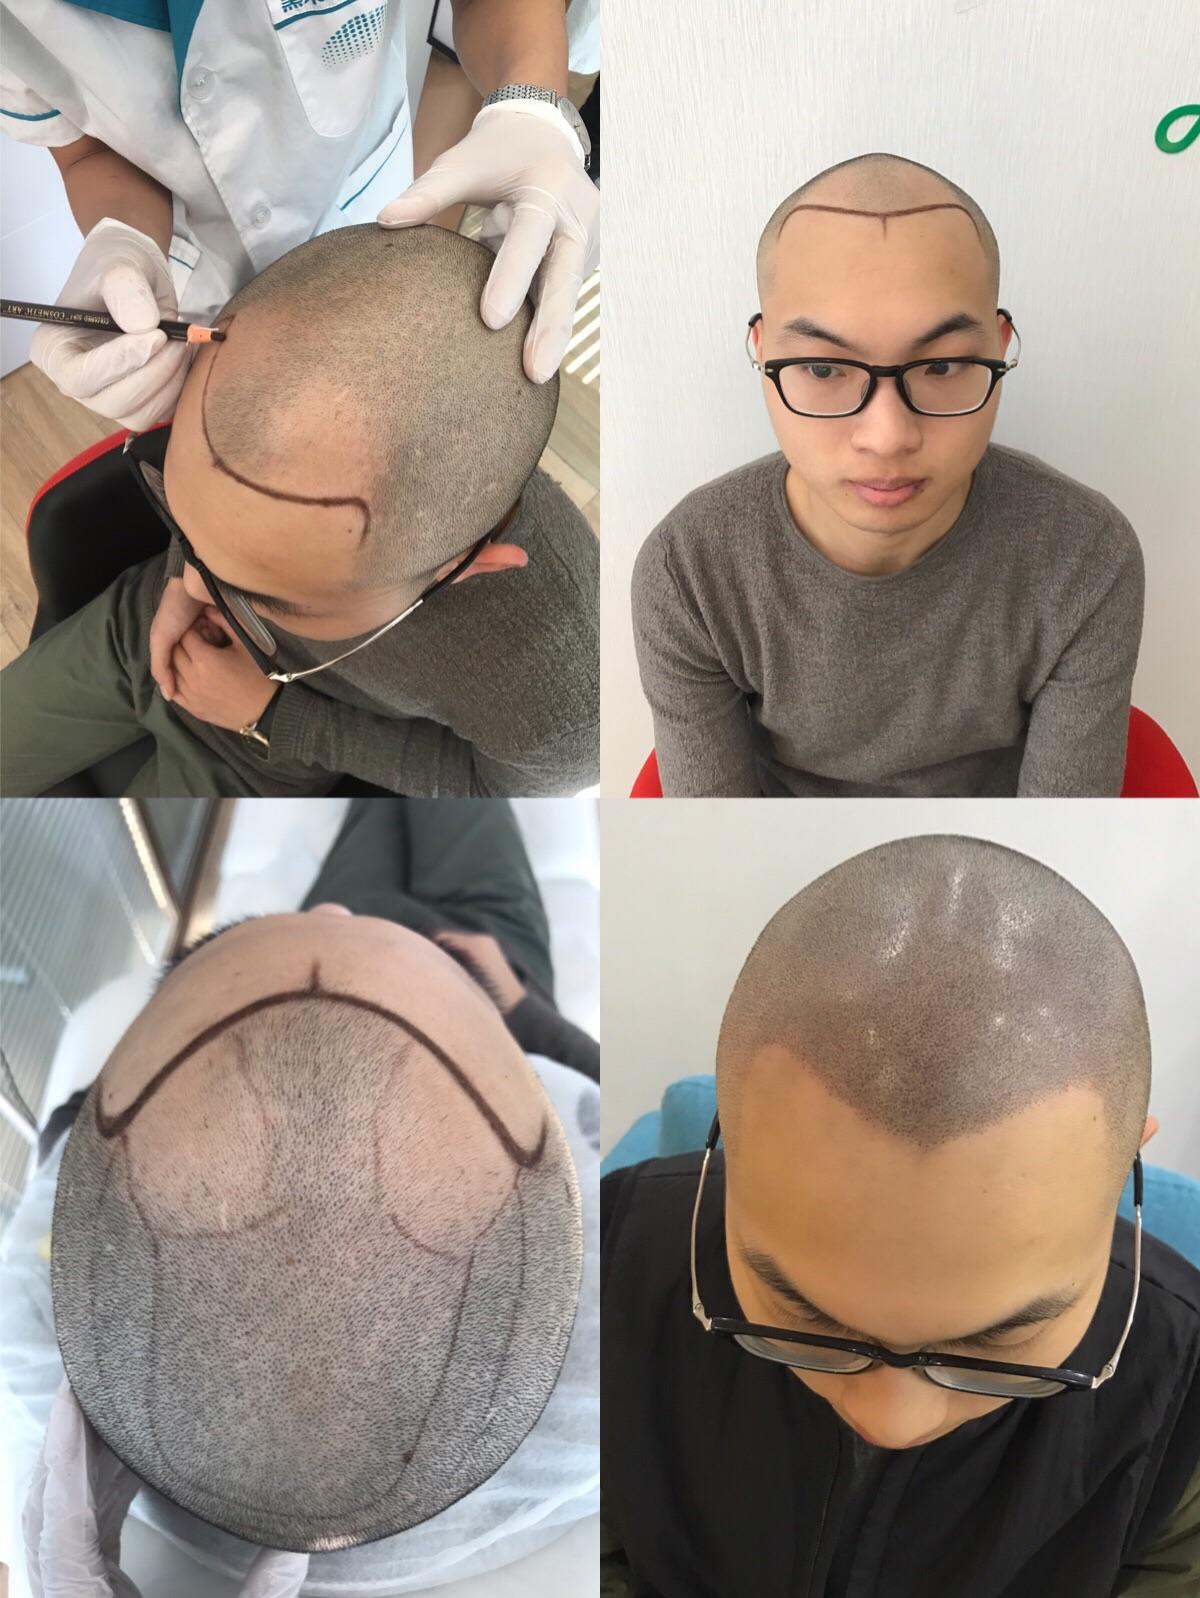 纹发,专业术语为smp(scalp micro pigmentation)